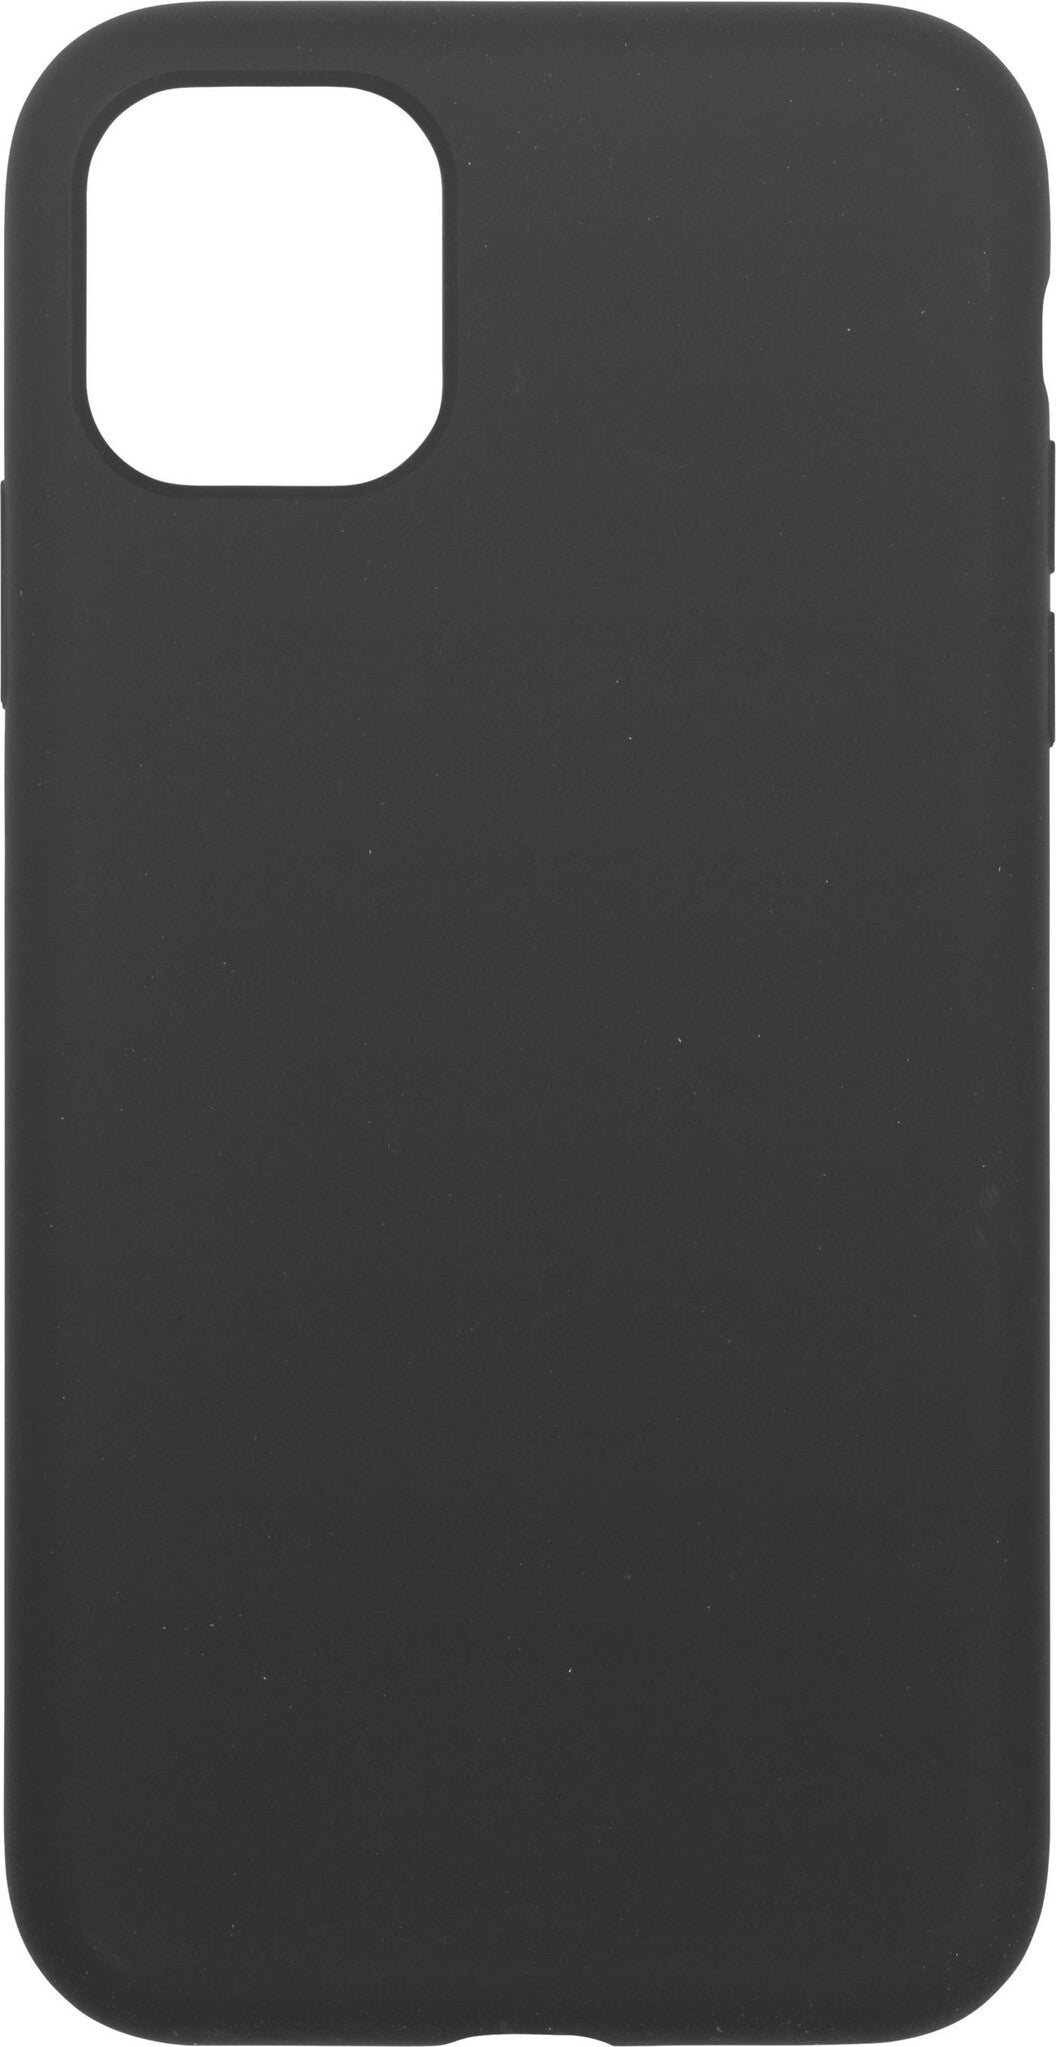 eSTUFF INFINITE RIGA mobile phone case for iPhone 11 in Black